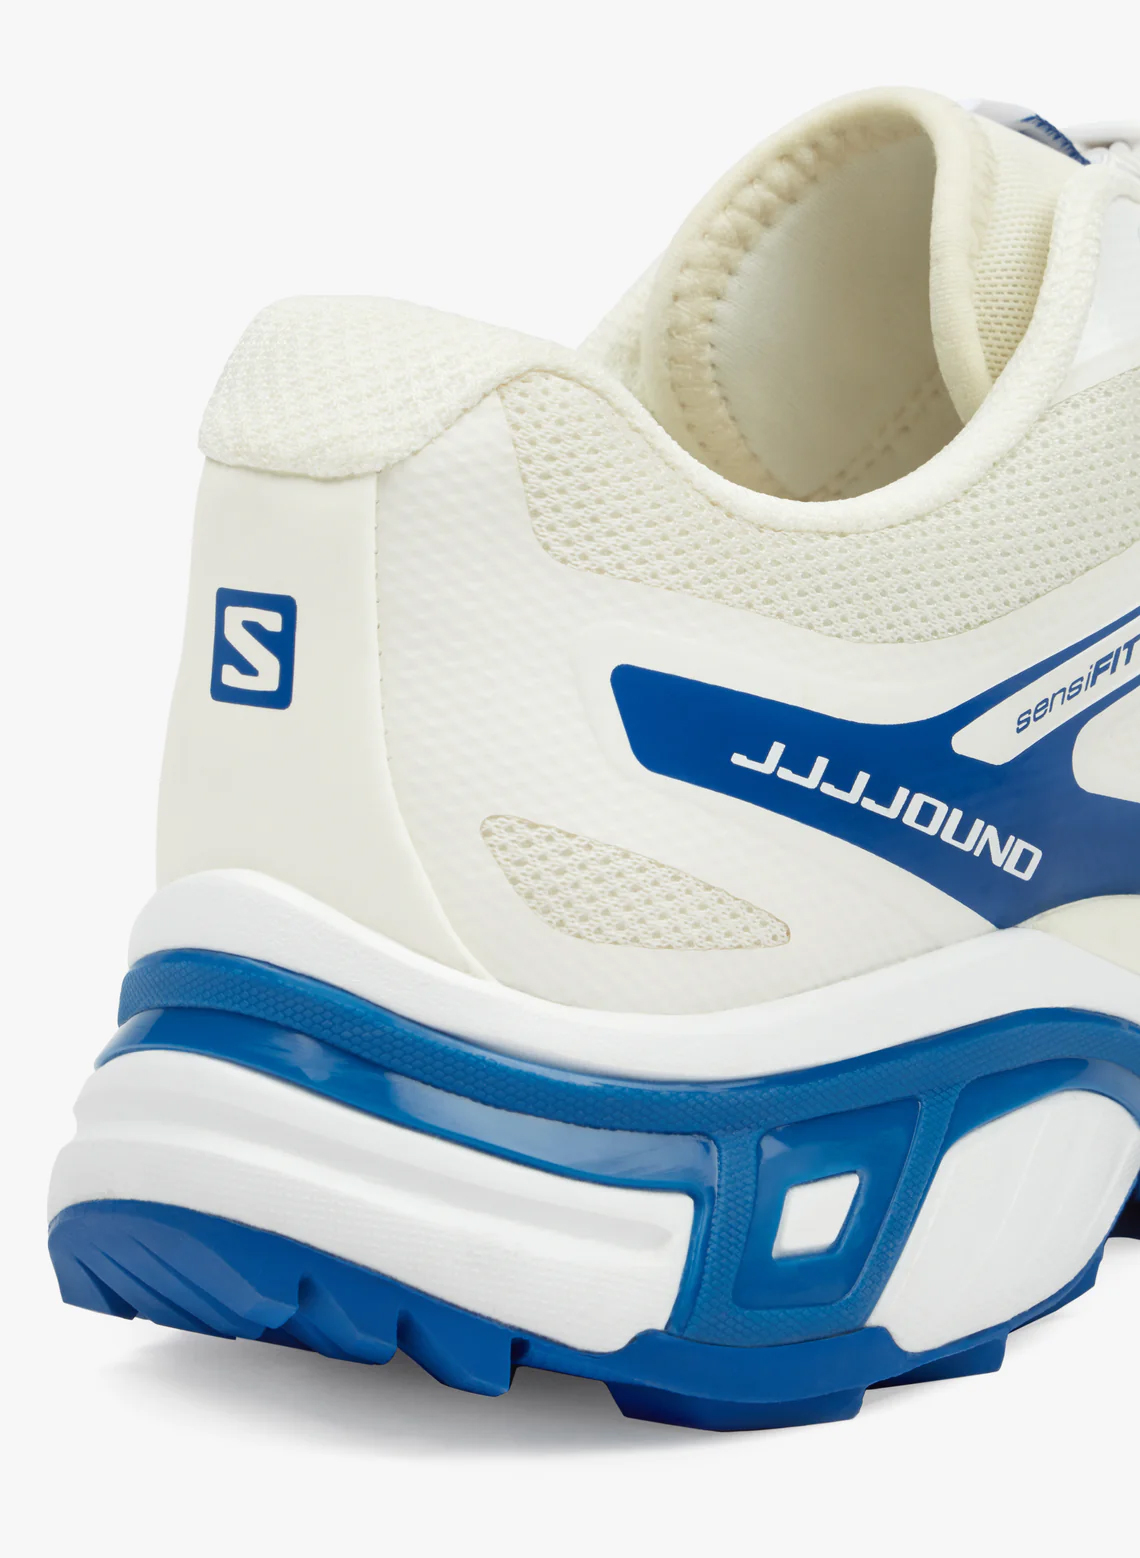 JJJJound Salomon XT Wings 2 Release Date | zapatillas de running